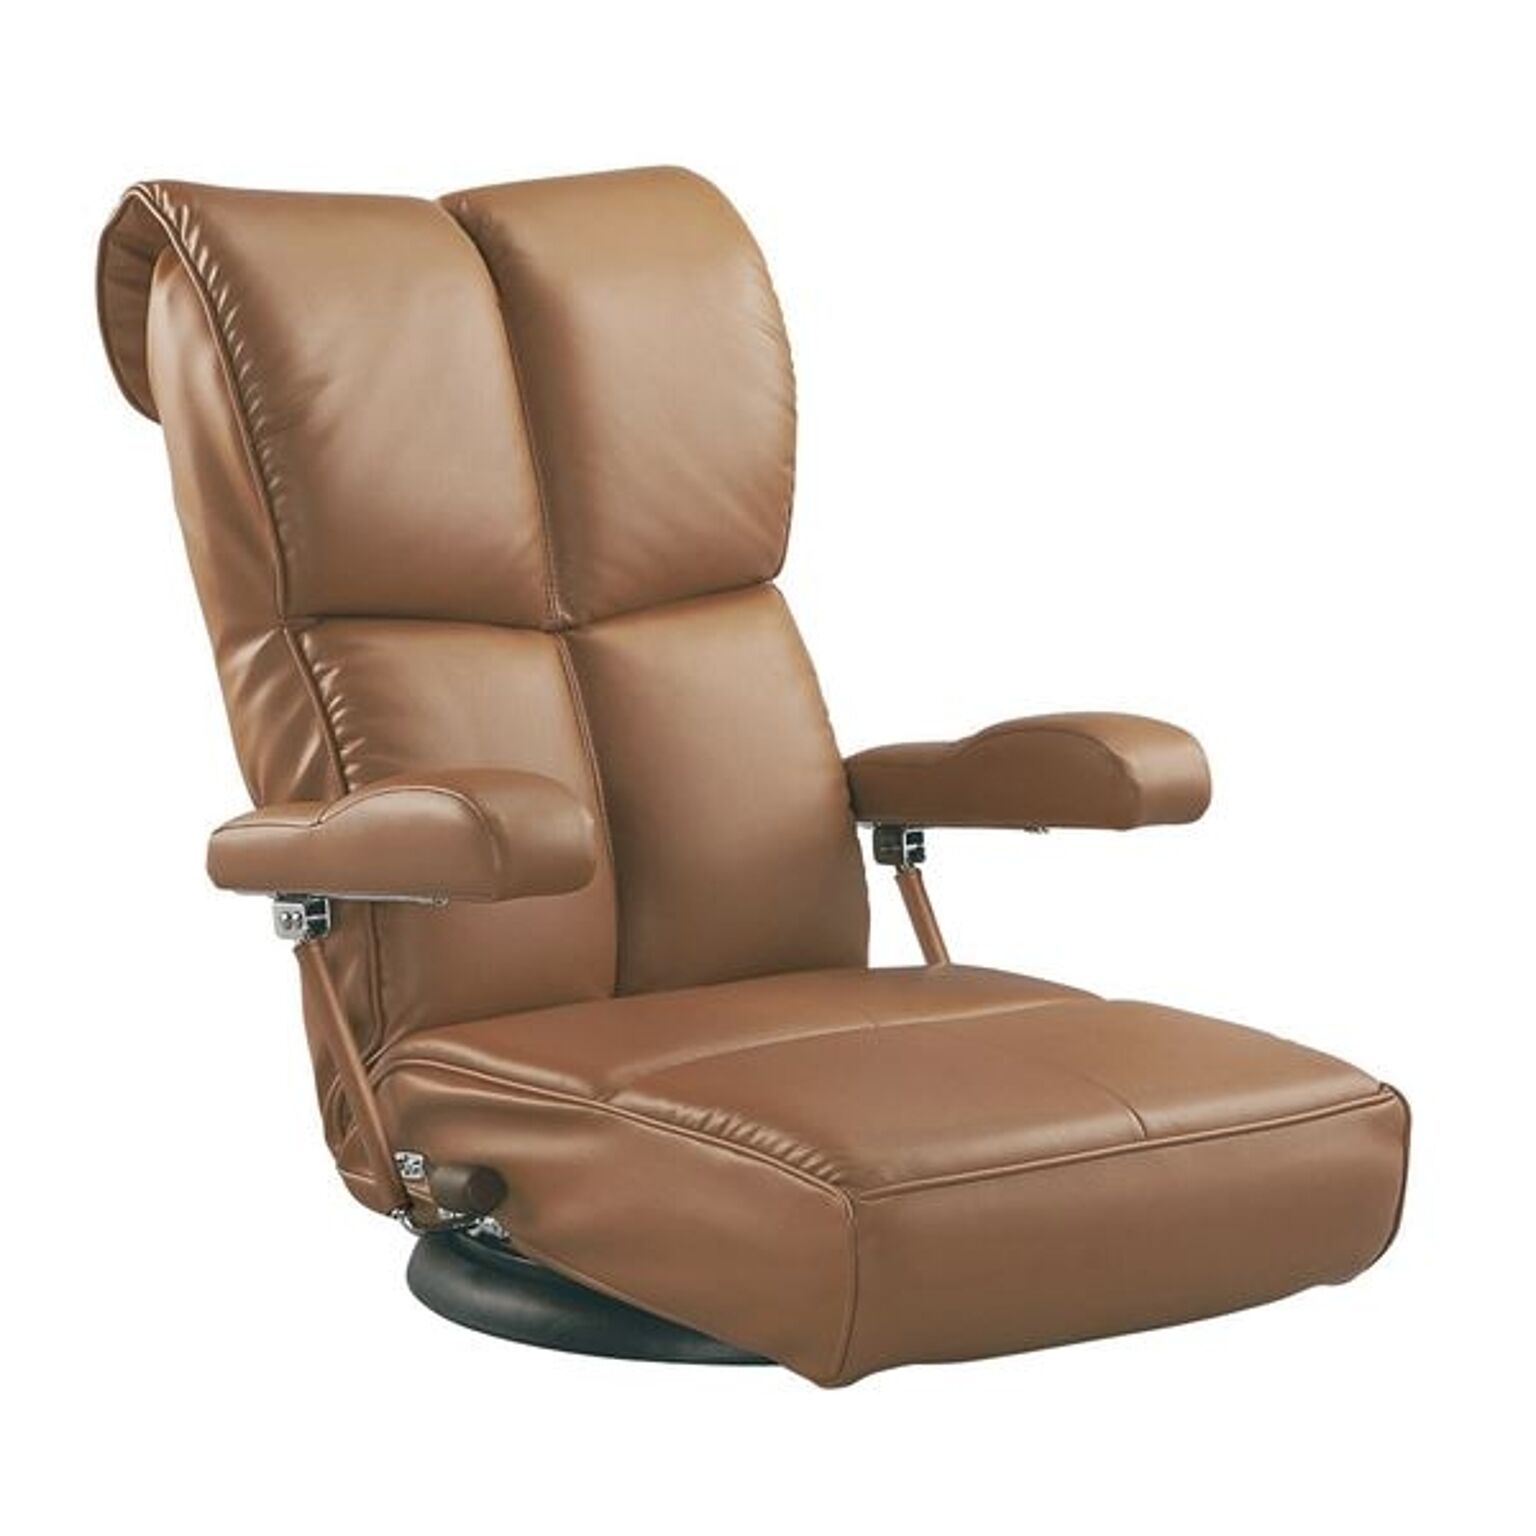 座椅子 幅62cm ブラウン 合皮 肘付き 13段リクライニング 座面360度回転 日本製 スーパーソフトレザー座椅子 響 完成品 リビング